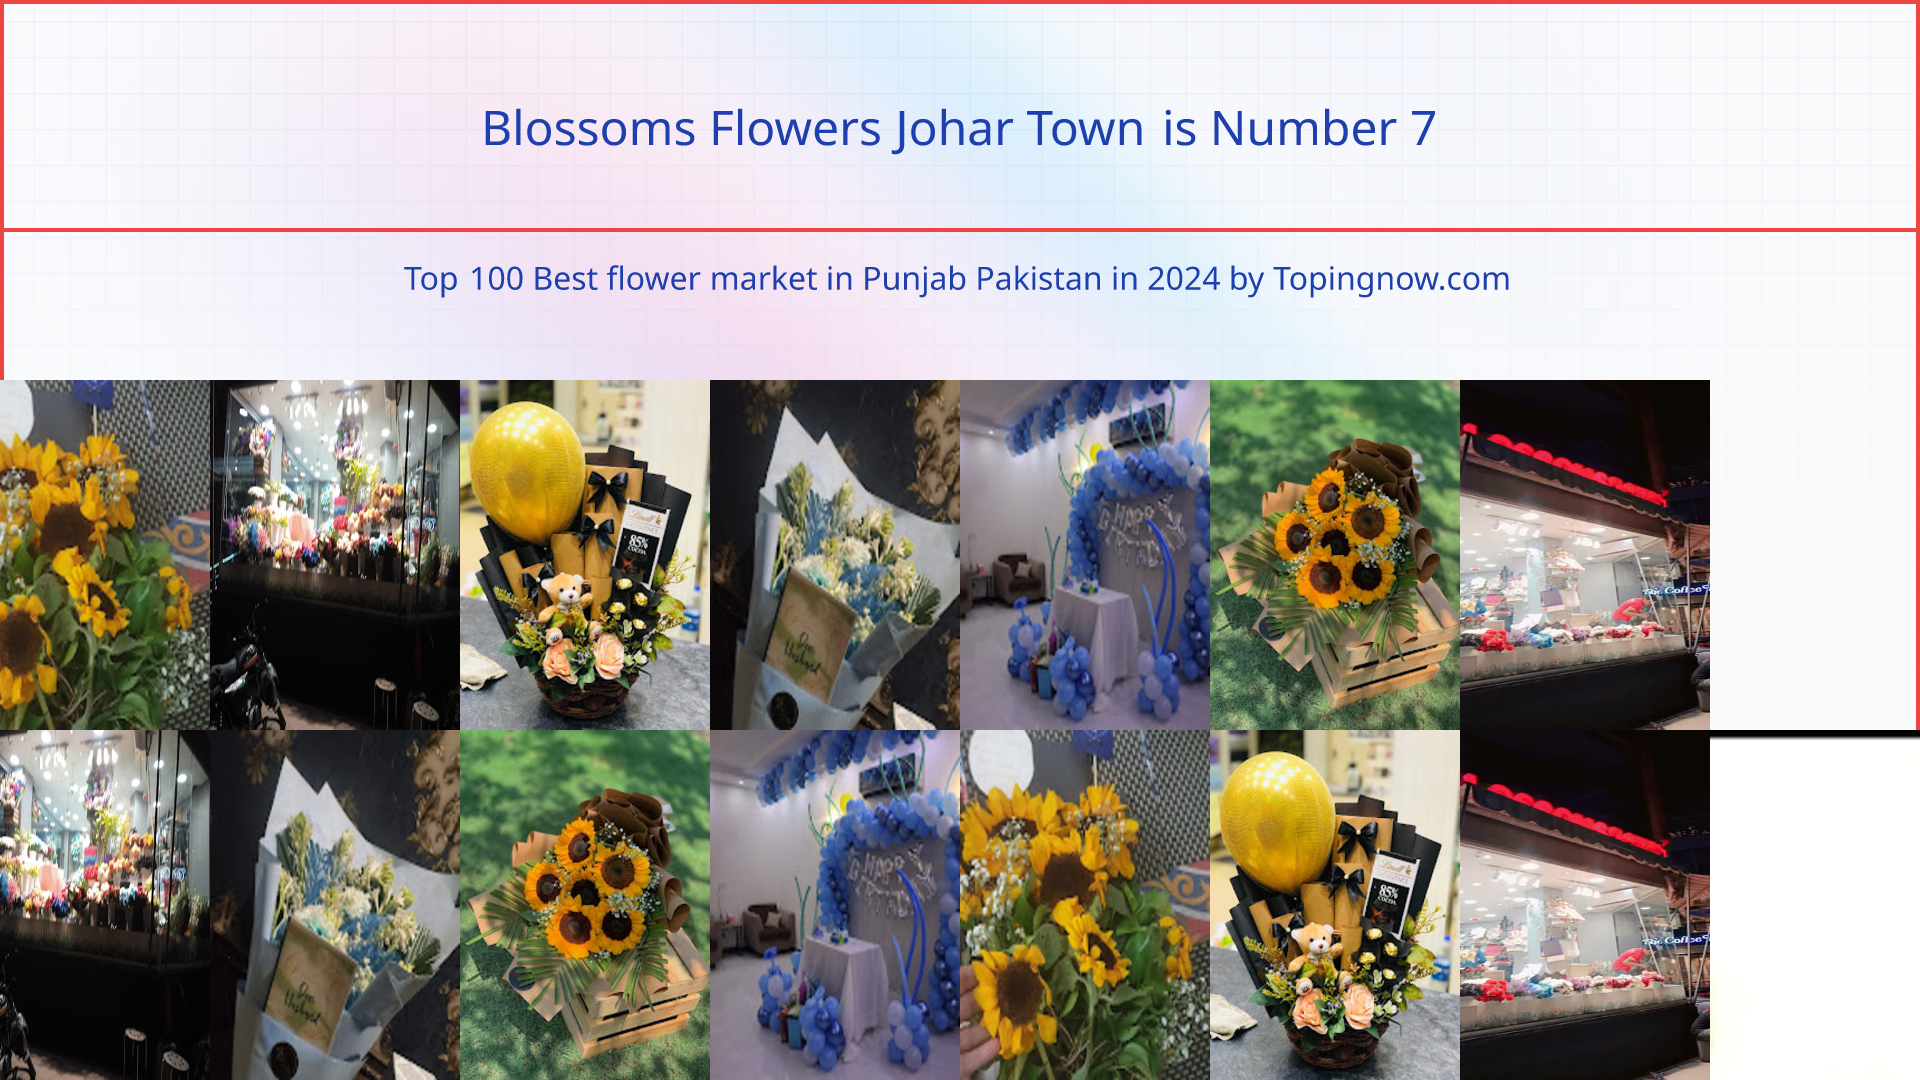 Blossoms Flowers Johar Town: Top 100 Best flower market in Punjab Pakistan in 2024